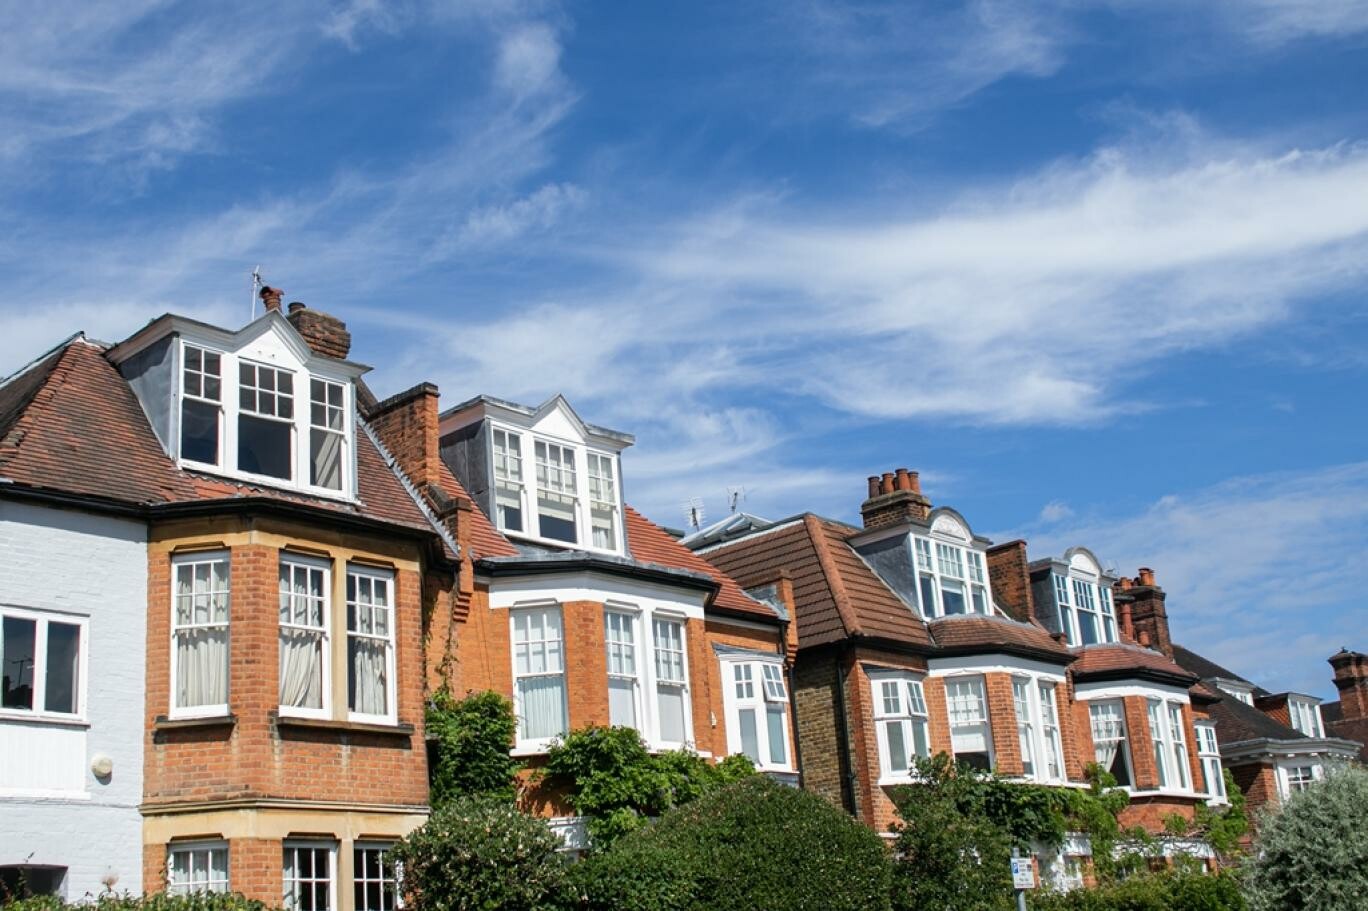 أسعار المنازل في بريطانيا تسجل أكبر انخفاض سنوي منذ عام 2009 